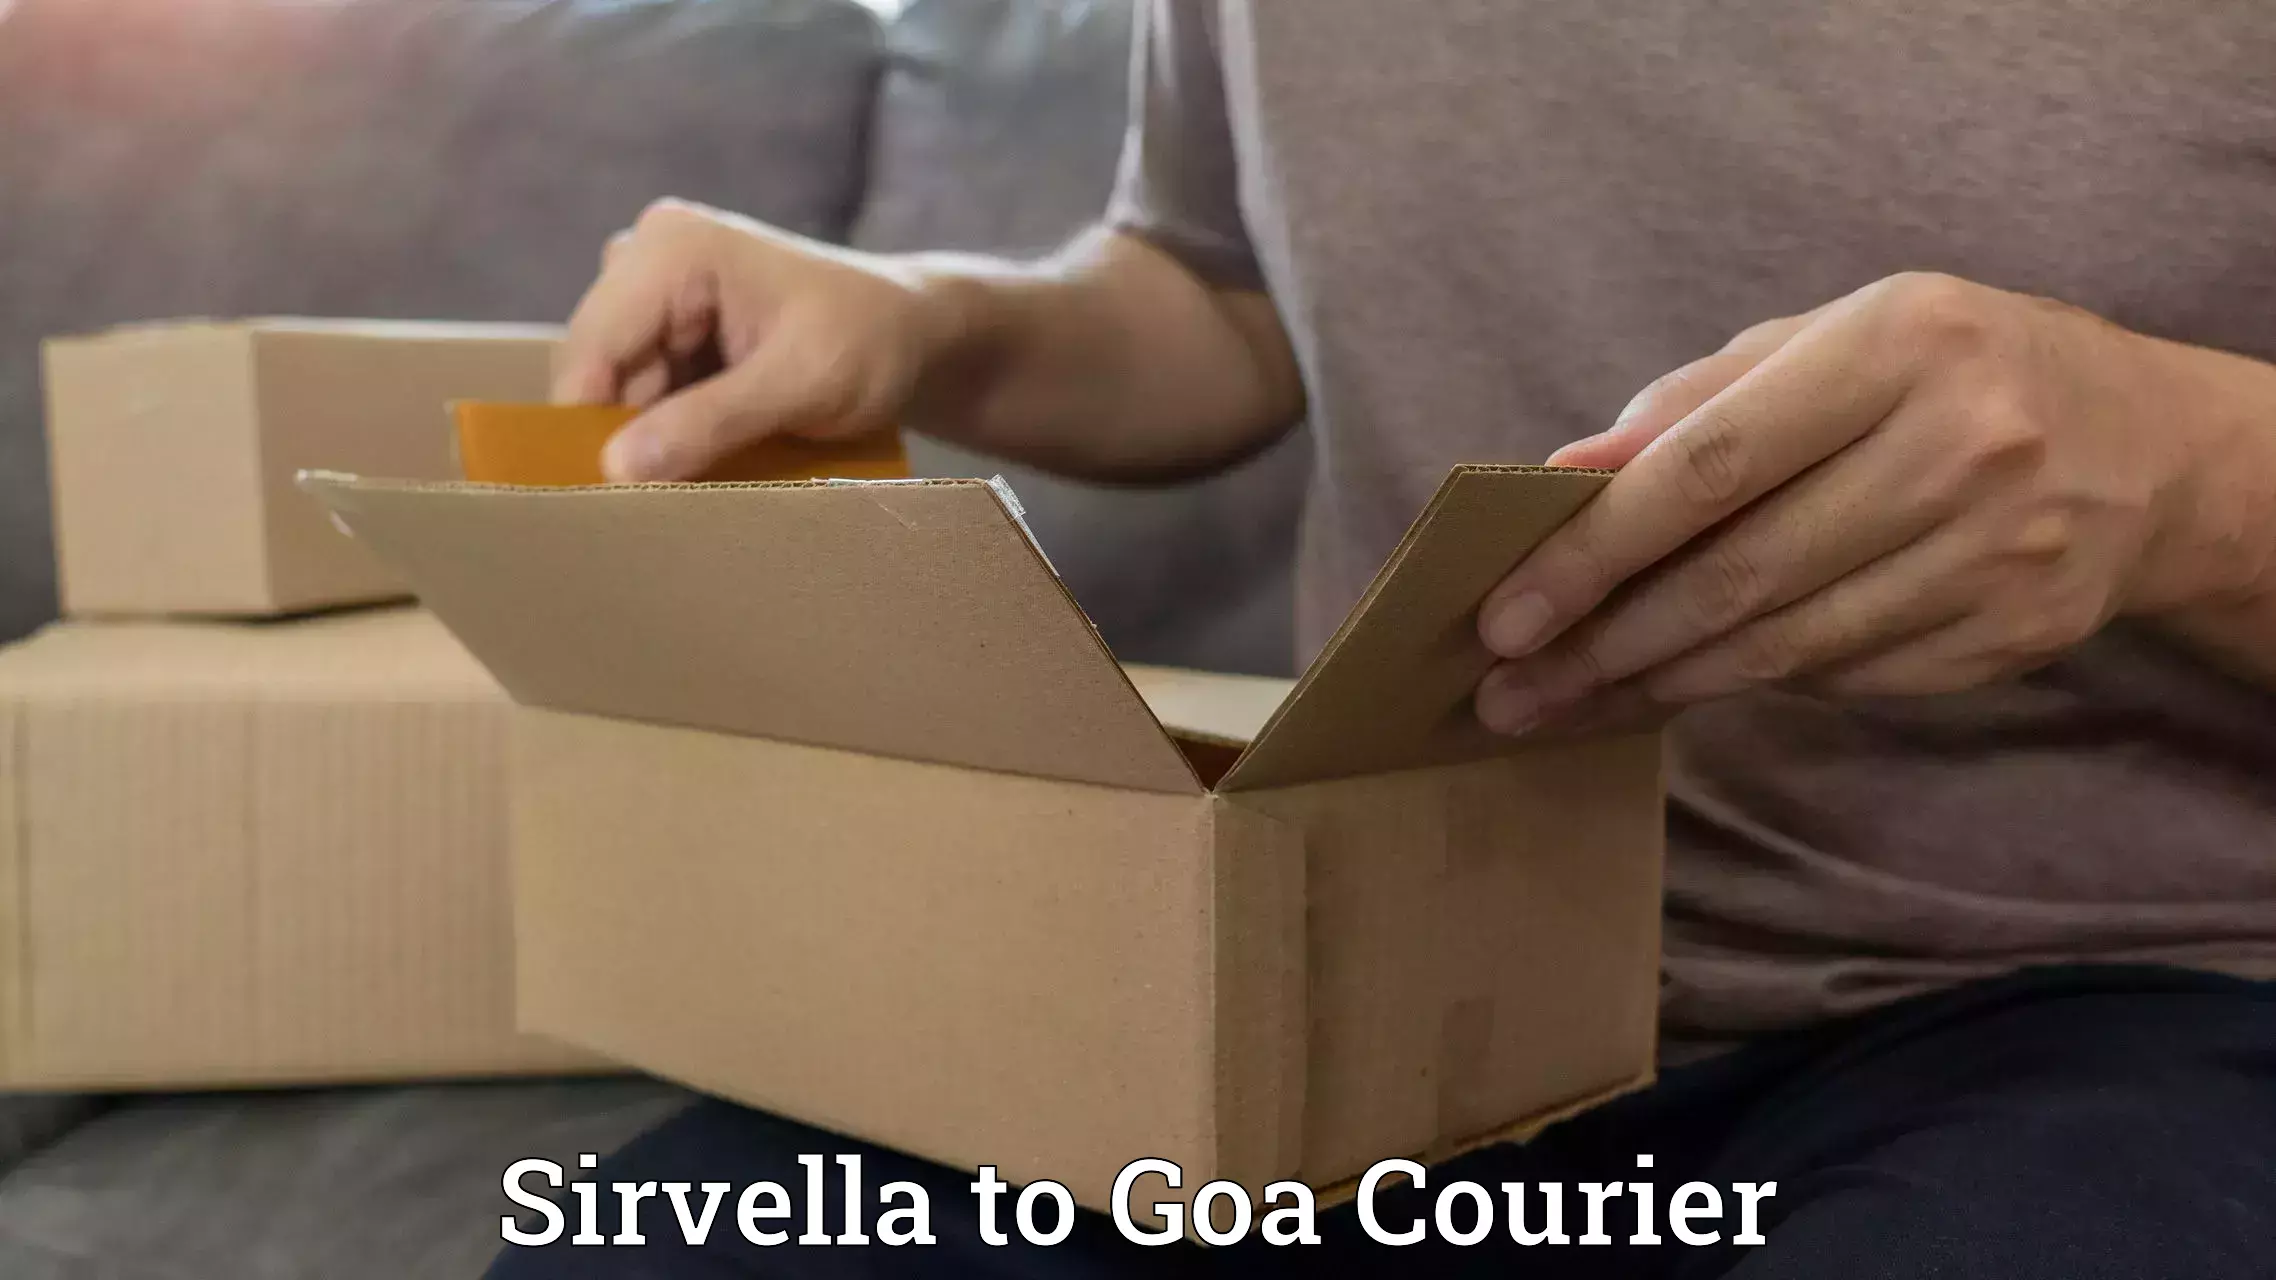 Express postal services Sirvella to IIT Goa